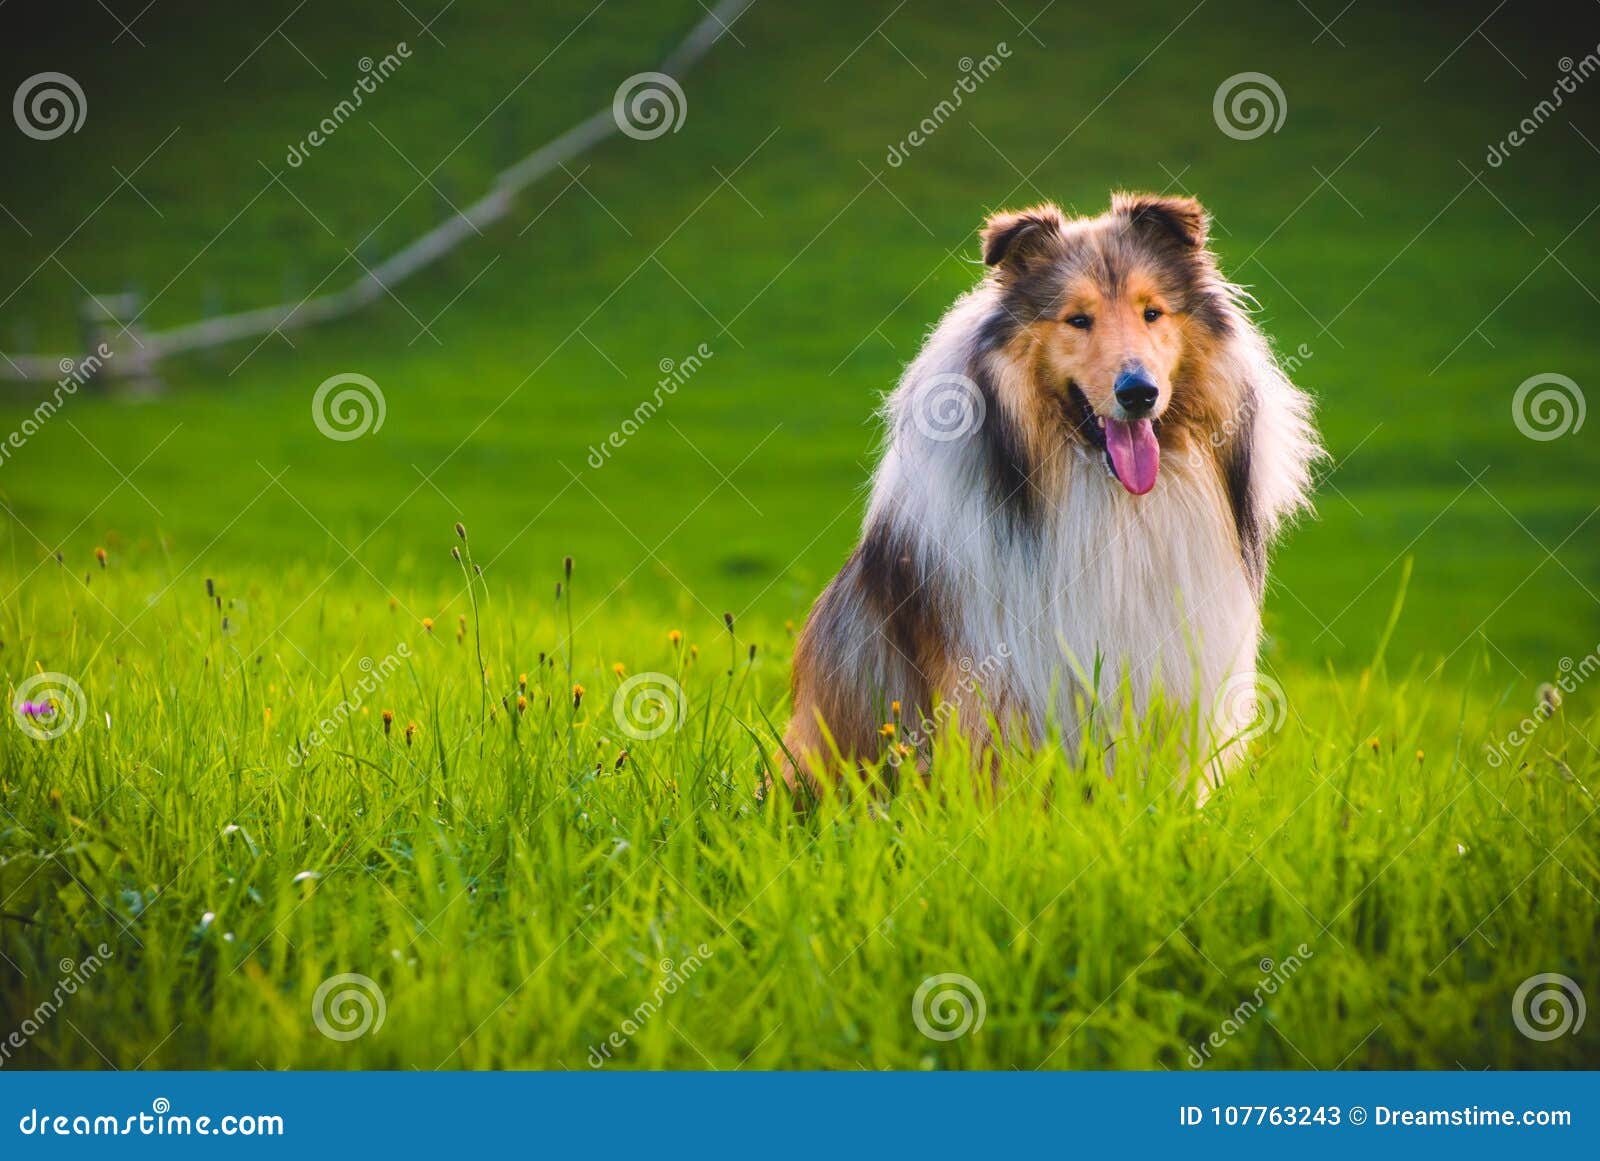 Σκυλί κόλλεϊ. Το κόλλεϊ είναι ένας διακριτικός τύπος βοσκής του σκυλιού, συμπεριλαμβανομένων πολλών σχετικών landraces και των επίσημων φυλών Η φυλή δημιουργήθηκε στη Σκωτία και τη βόρεια Αγγλία